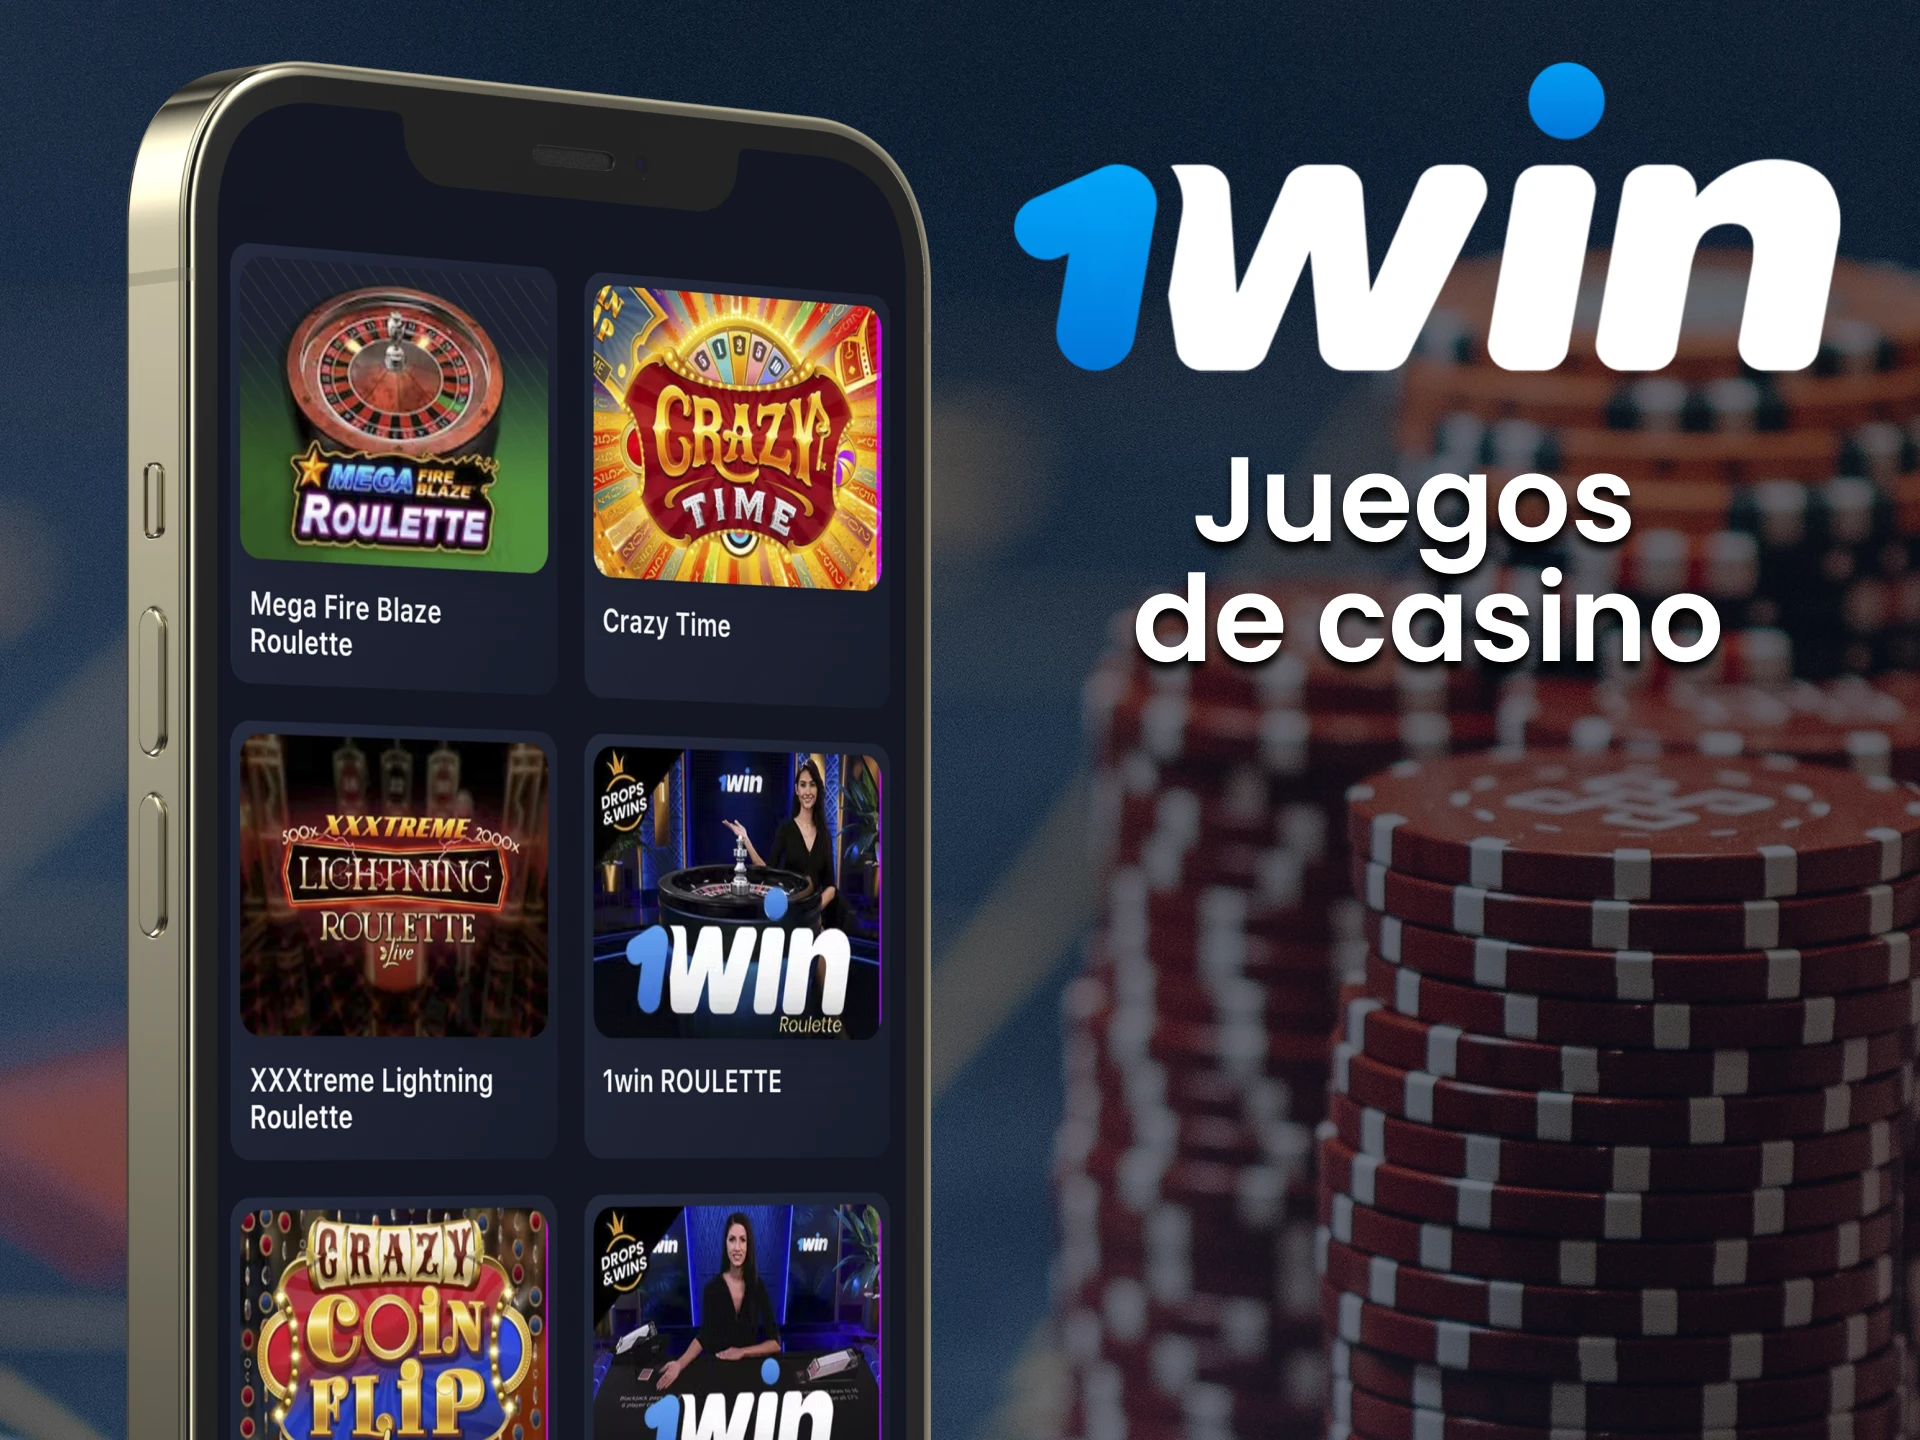 En 1win app le espera una amplia lista de juegos de casino.